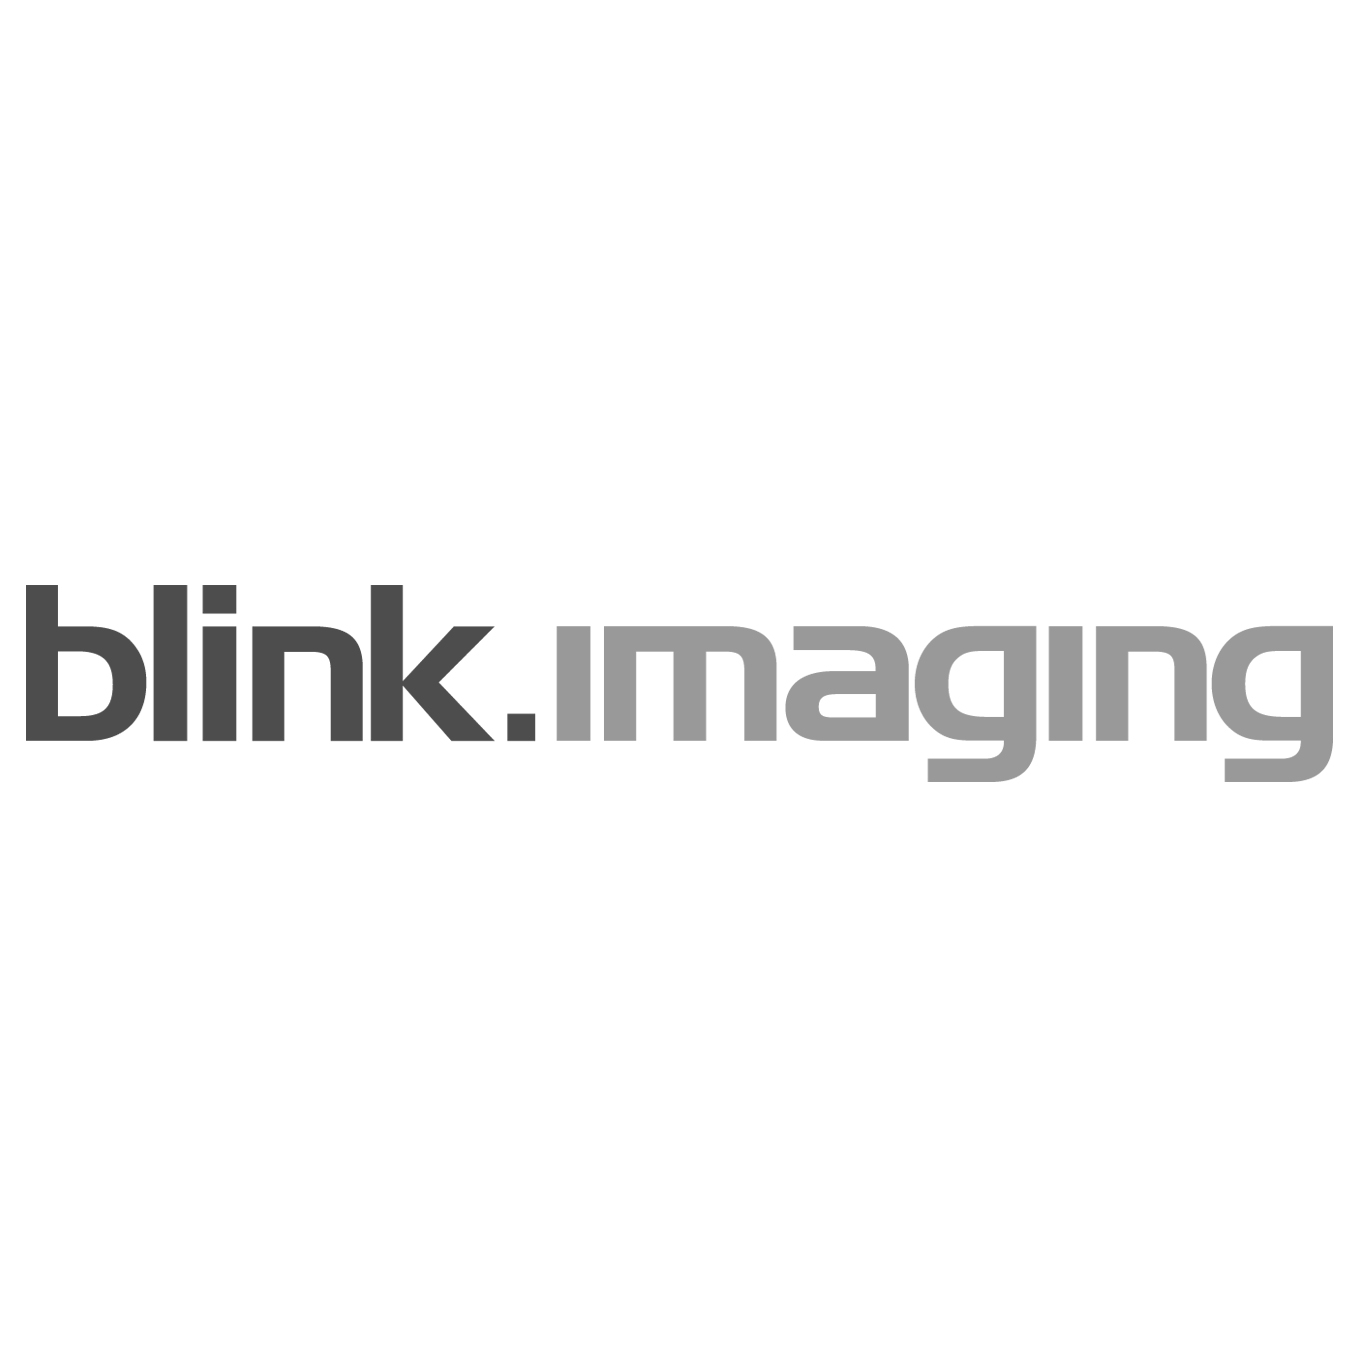 Blink imaging